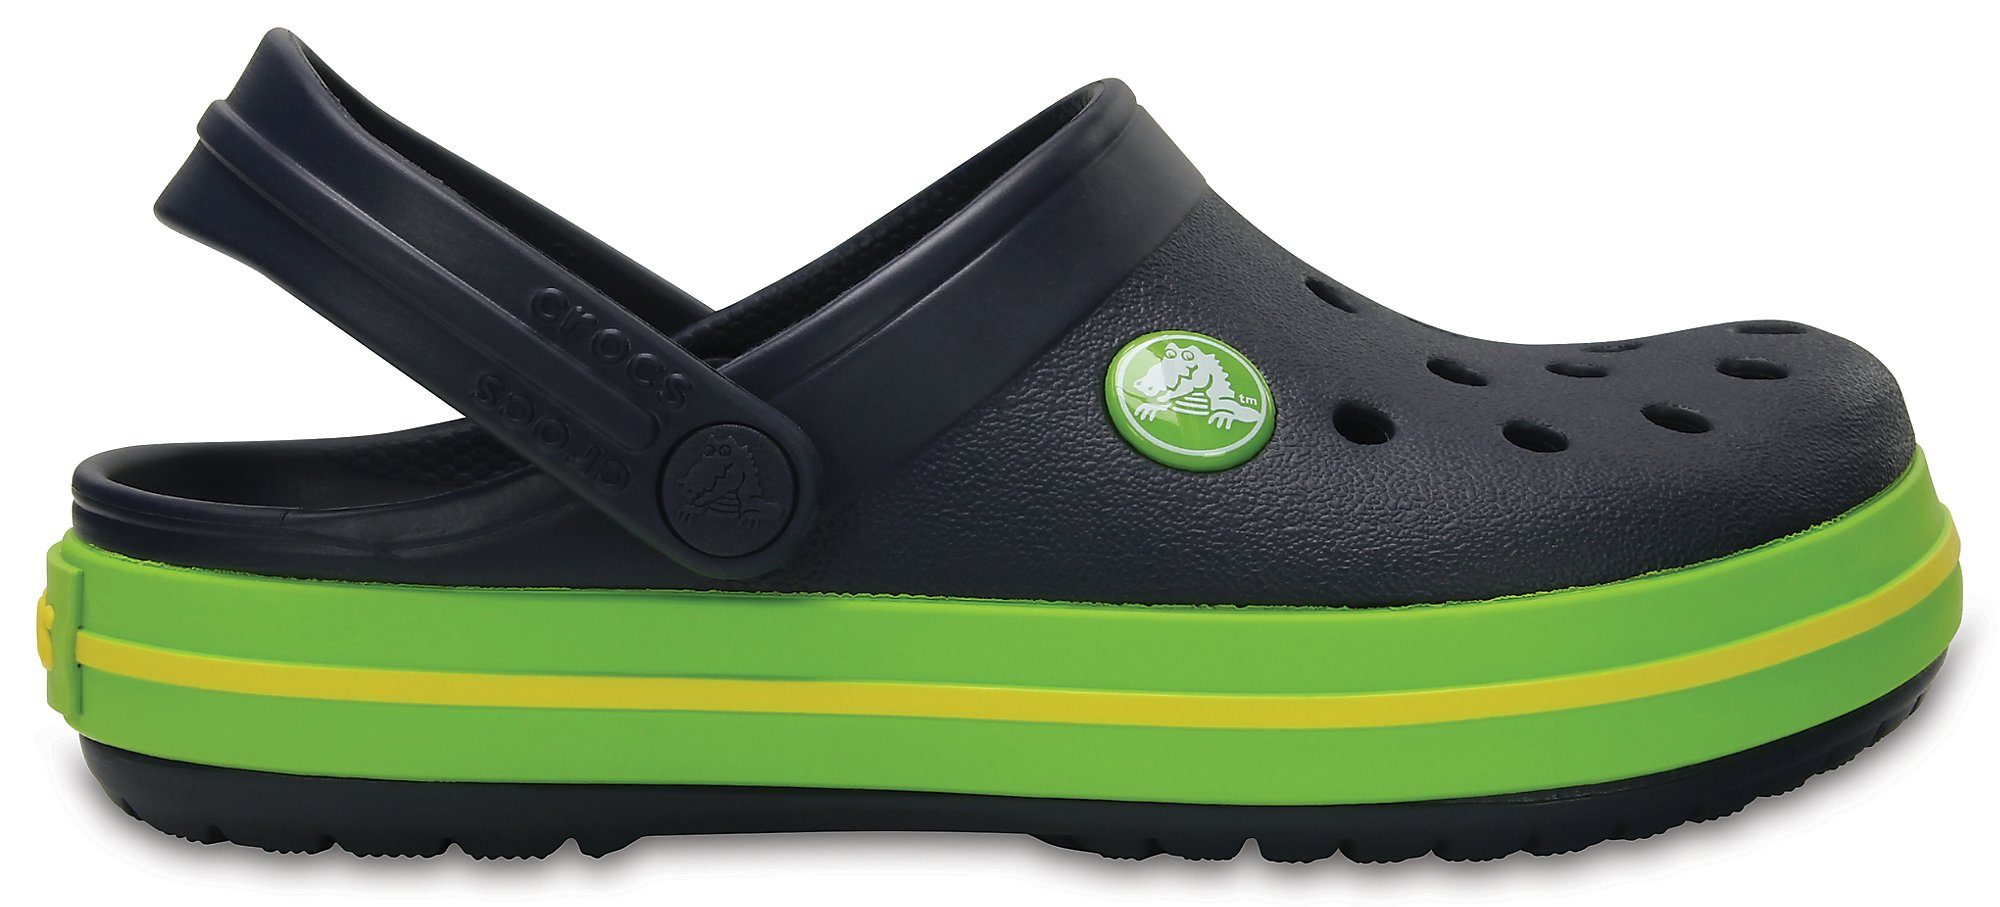 navy/volt Crocband green Sandale Kids Crocs Clog